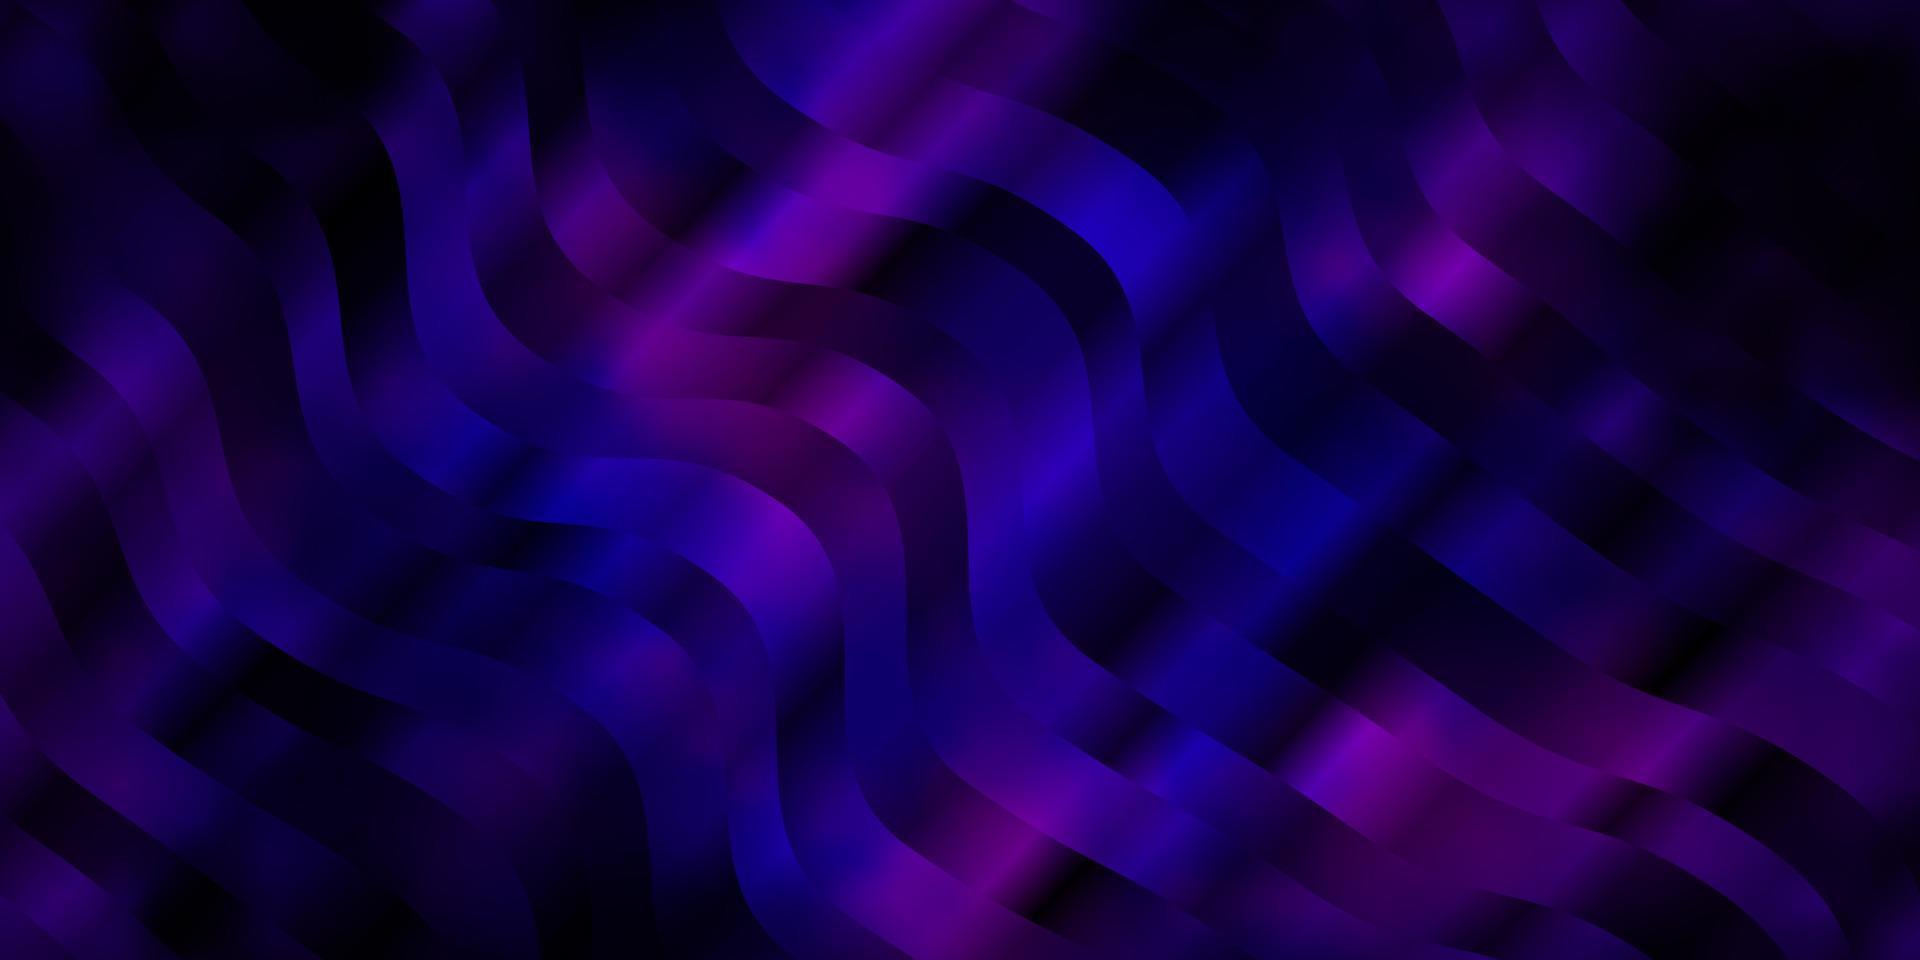 sfondo vettoriale viola scuro con linee.